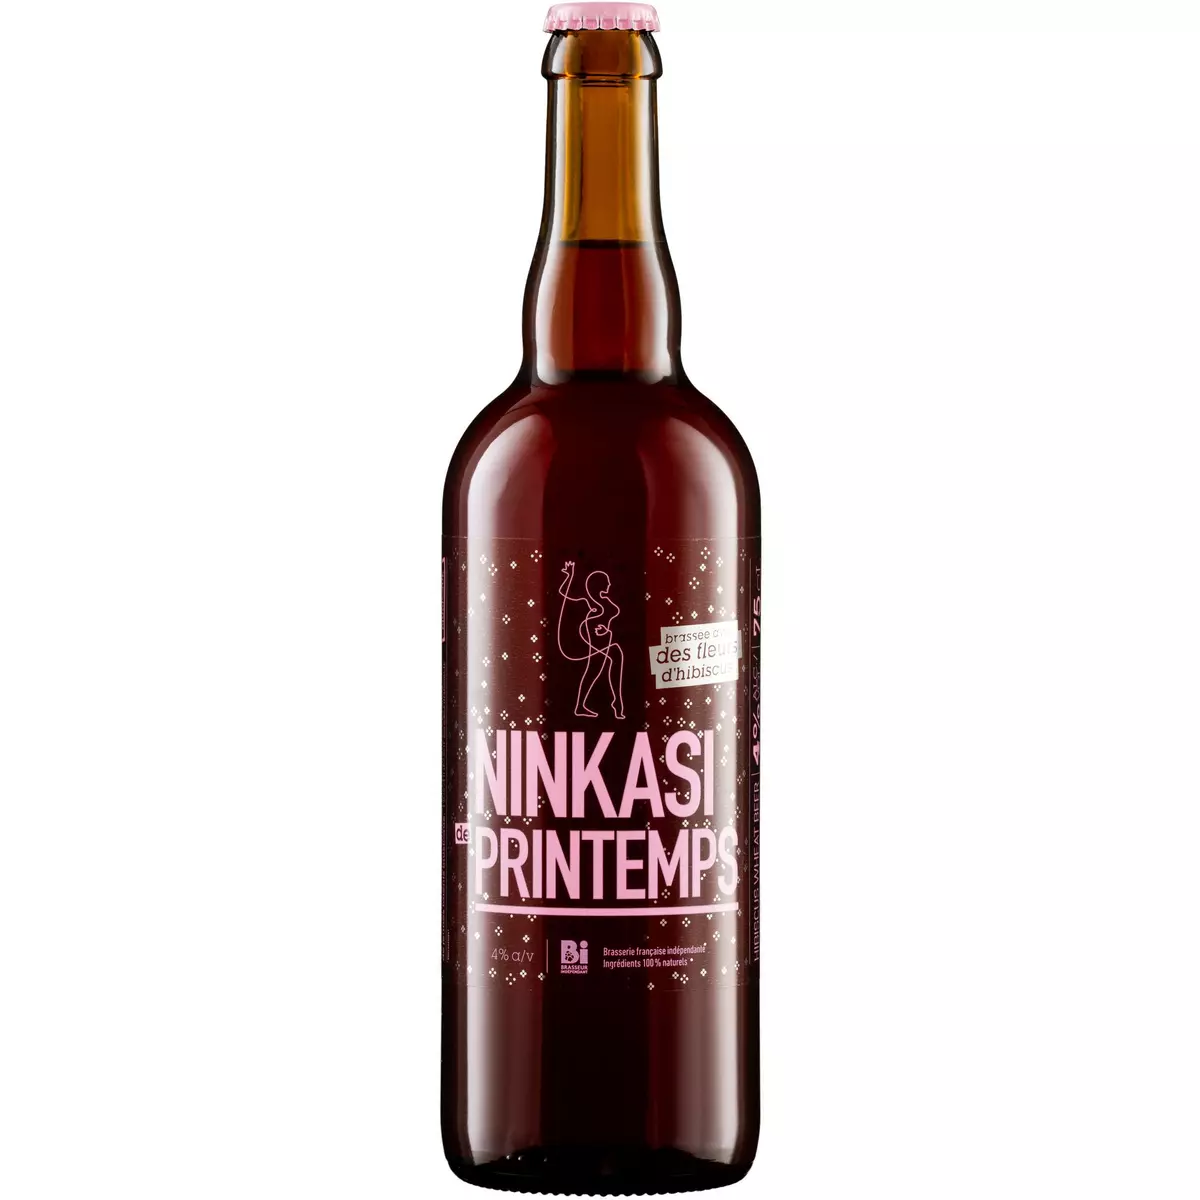 NINKASI Bière blonde de printemps 4% bouteille 75cl